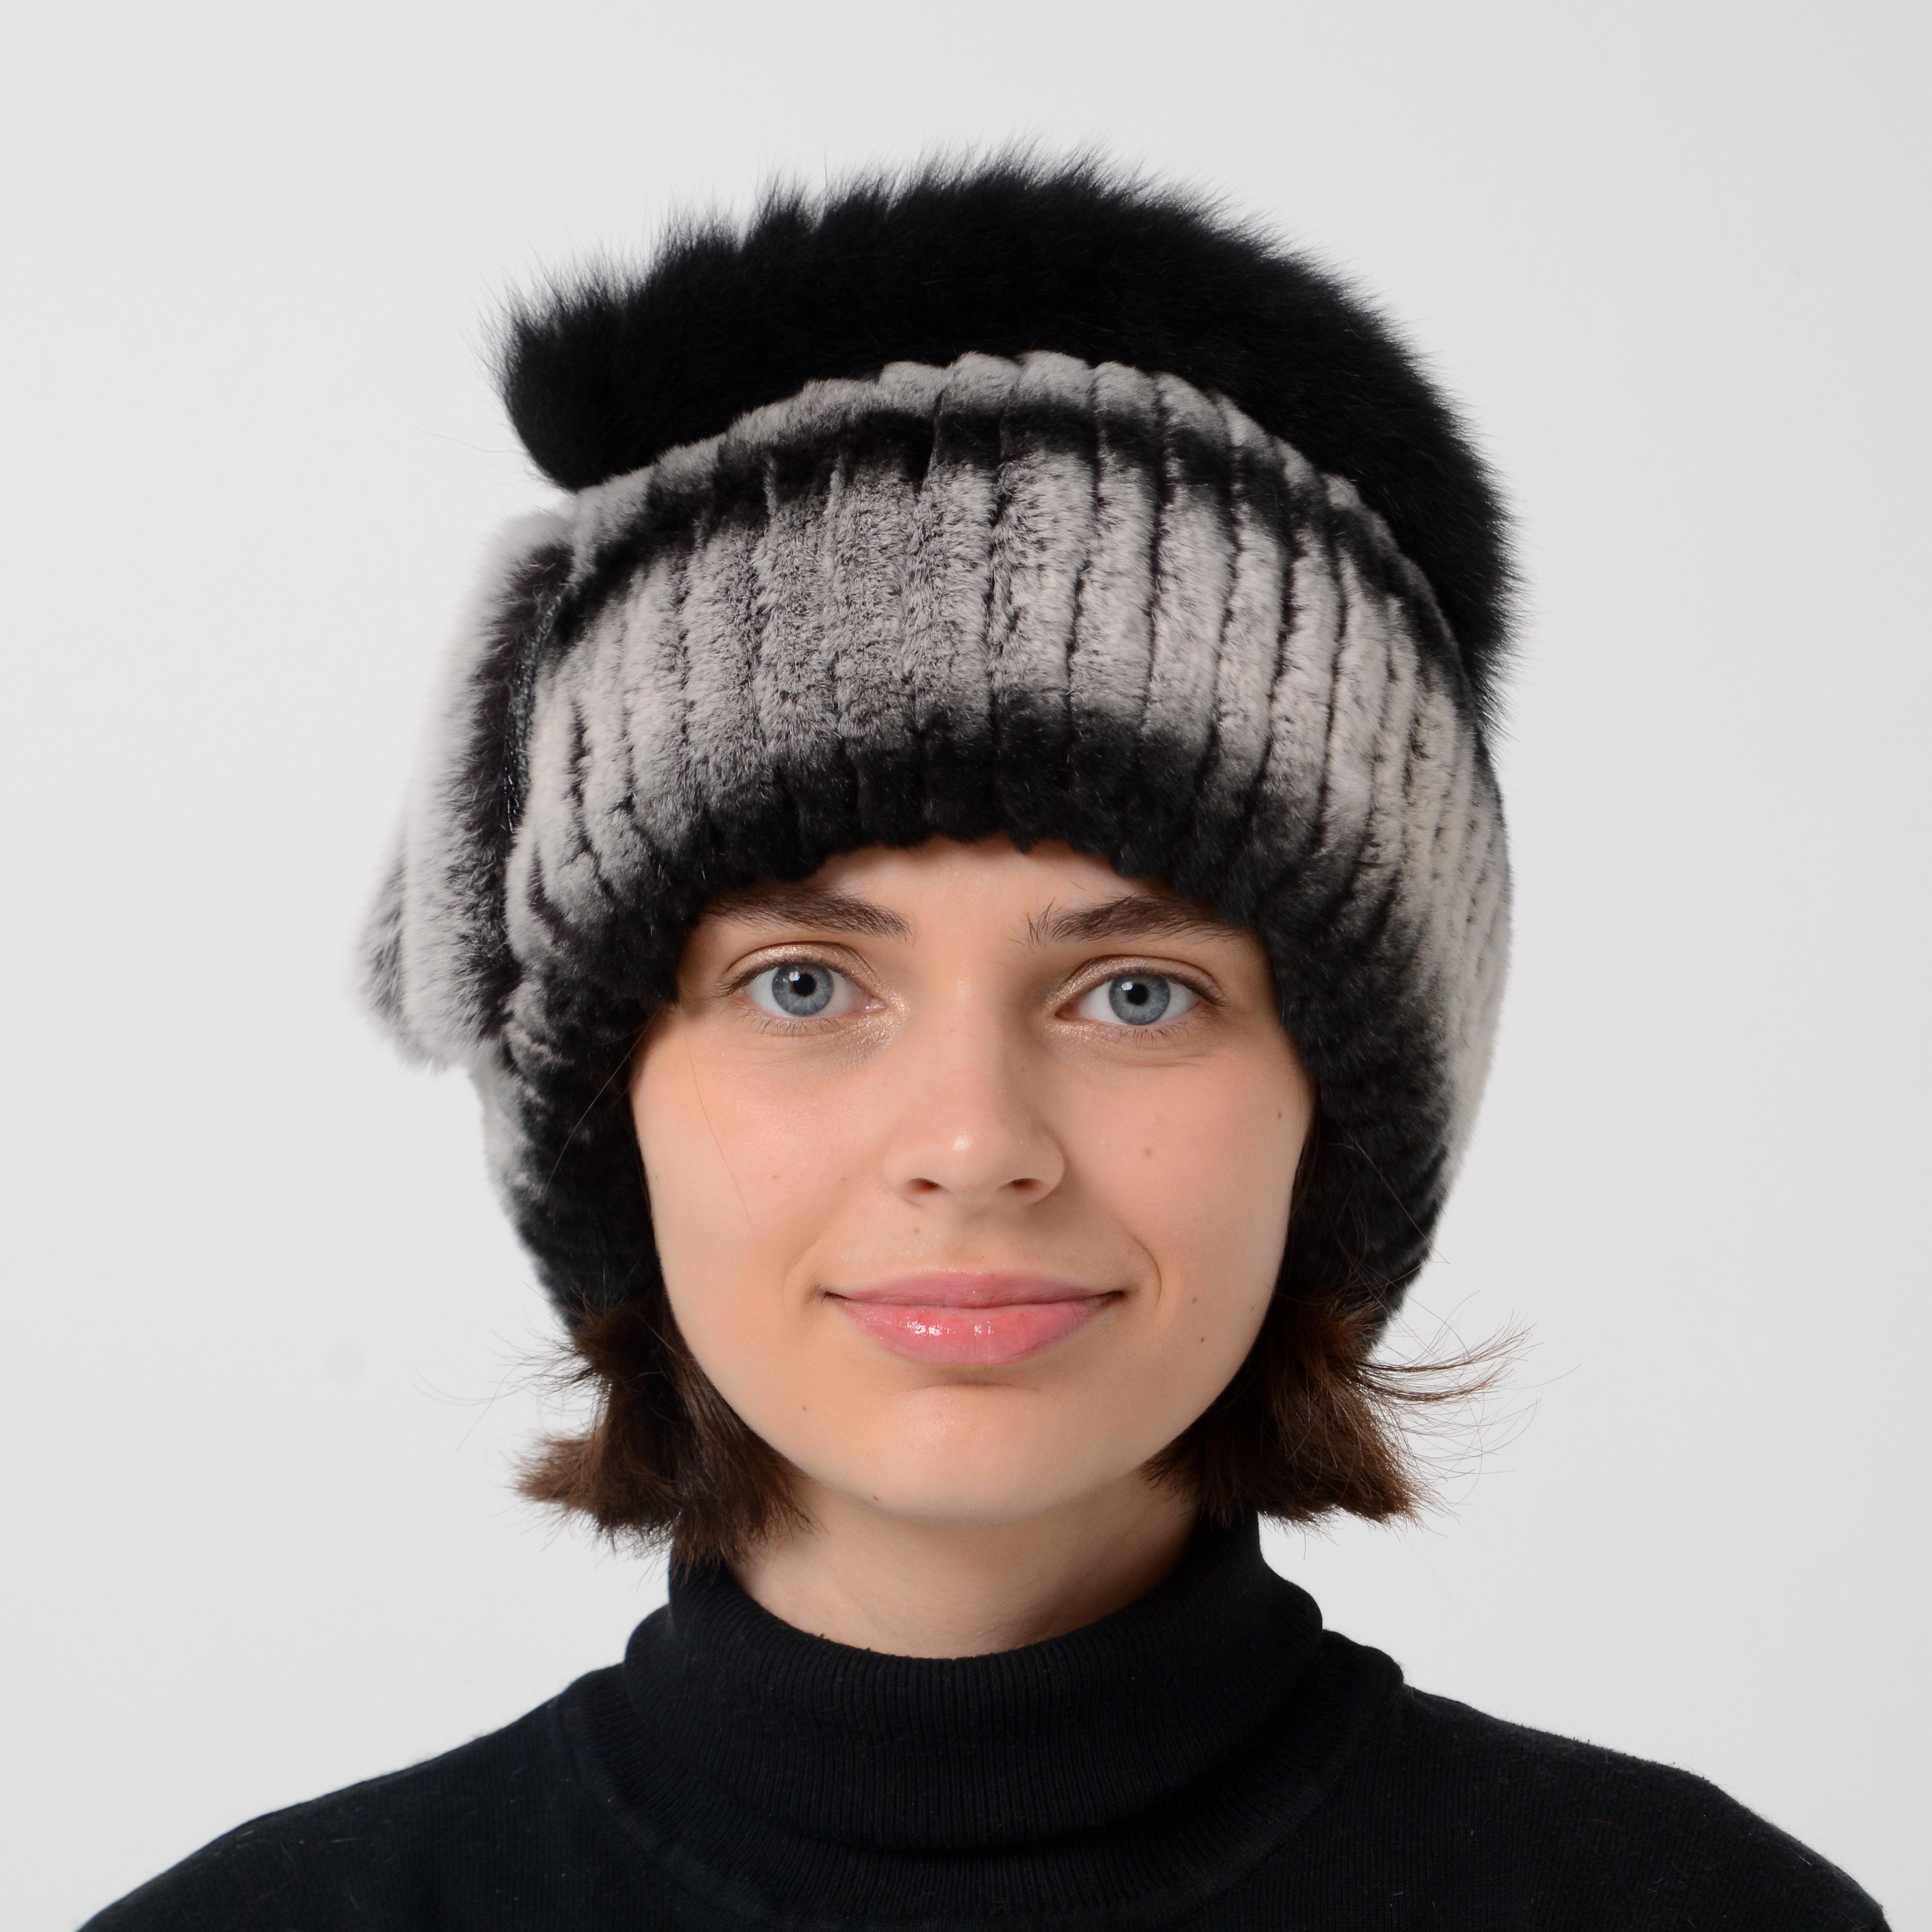 Женские вязаные трикотажные шапки отделанные мехом - купить в интернет магазине 